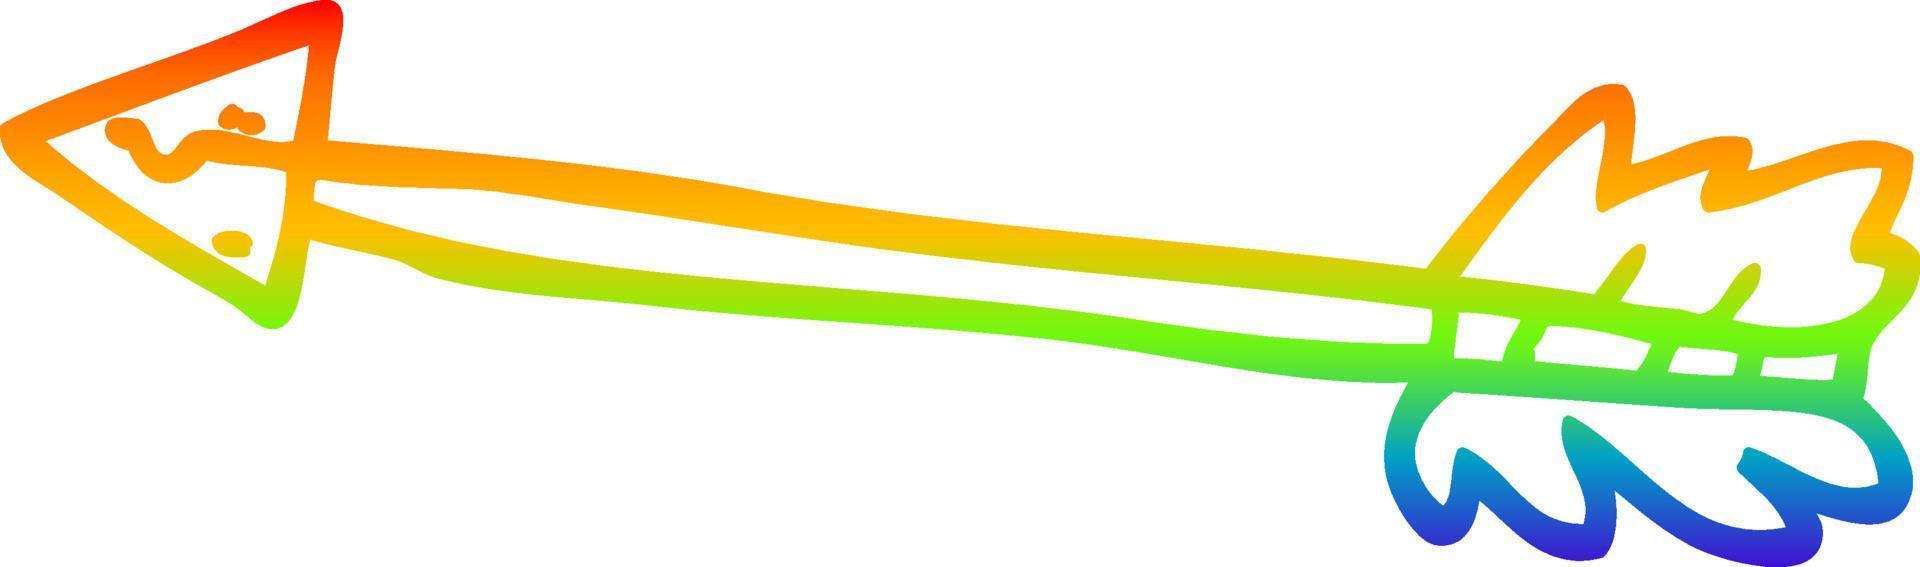 desenho de linha gradiente arco-íris desenho de seta longa vetor